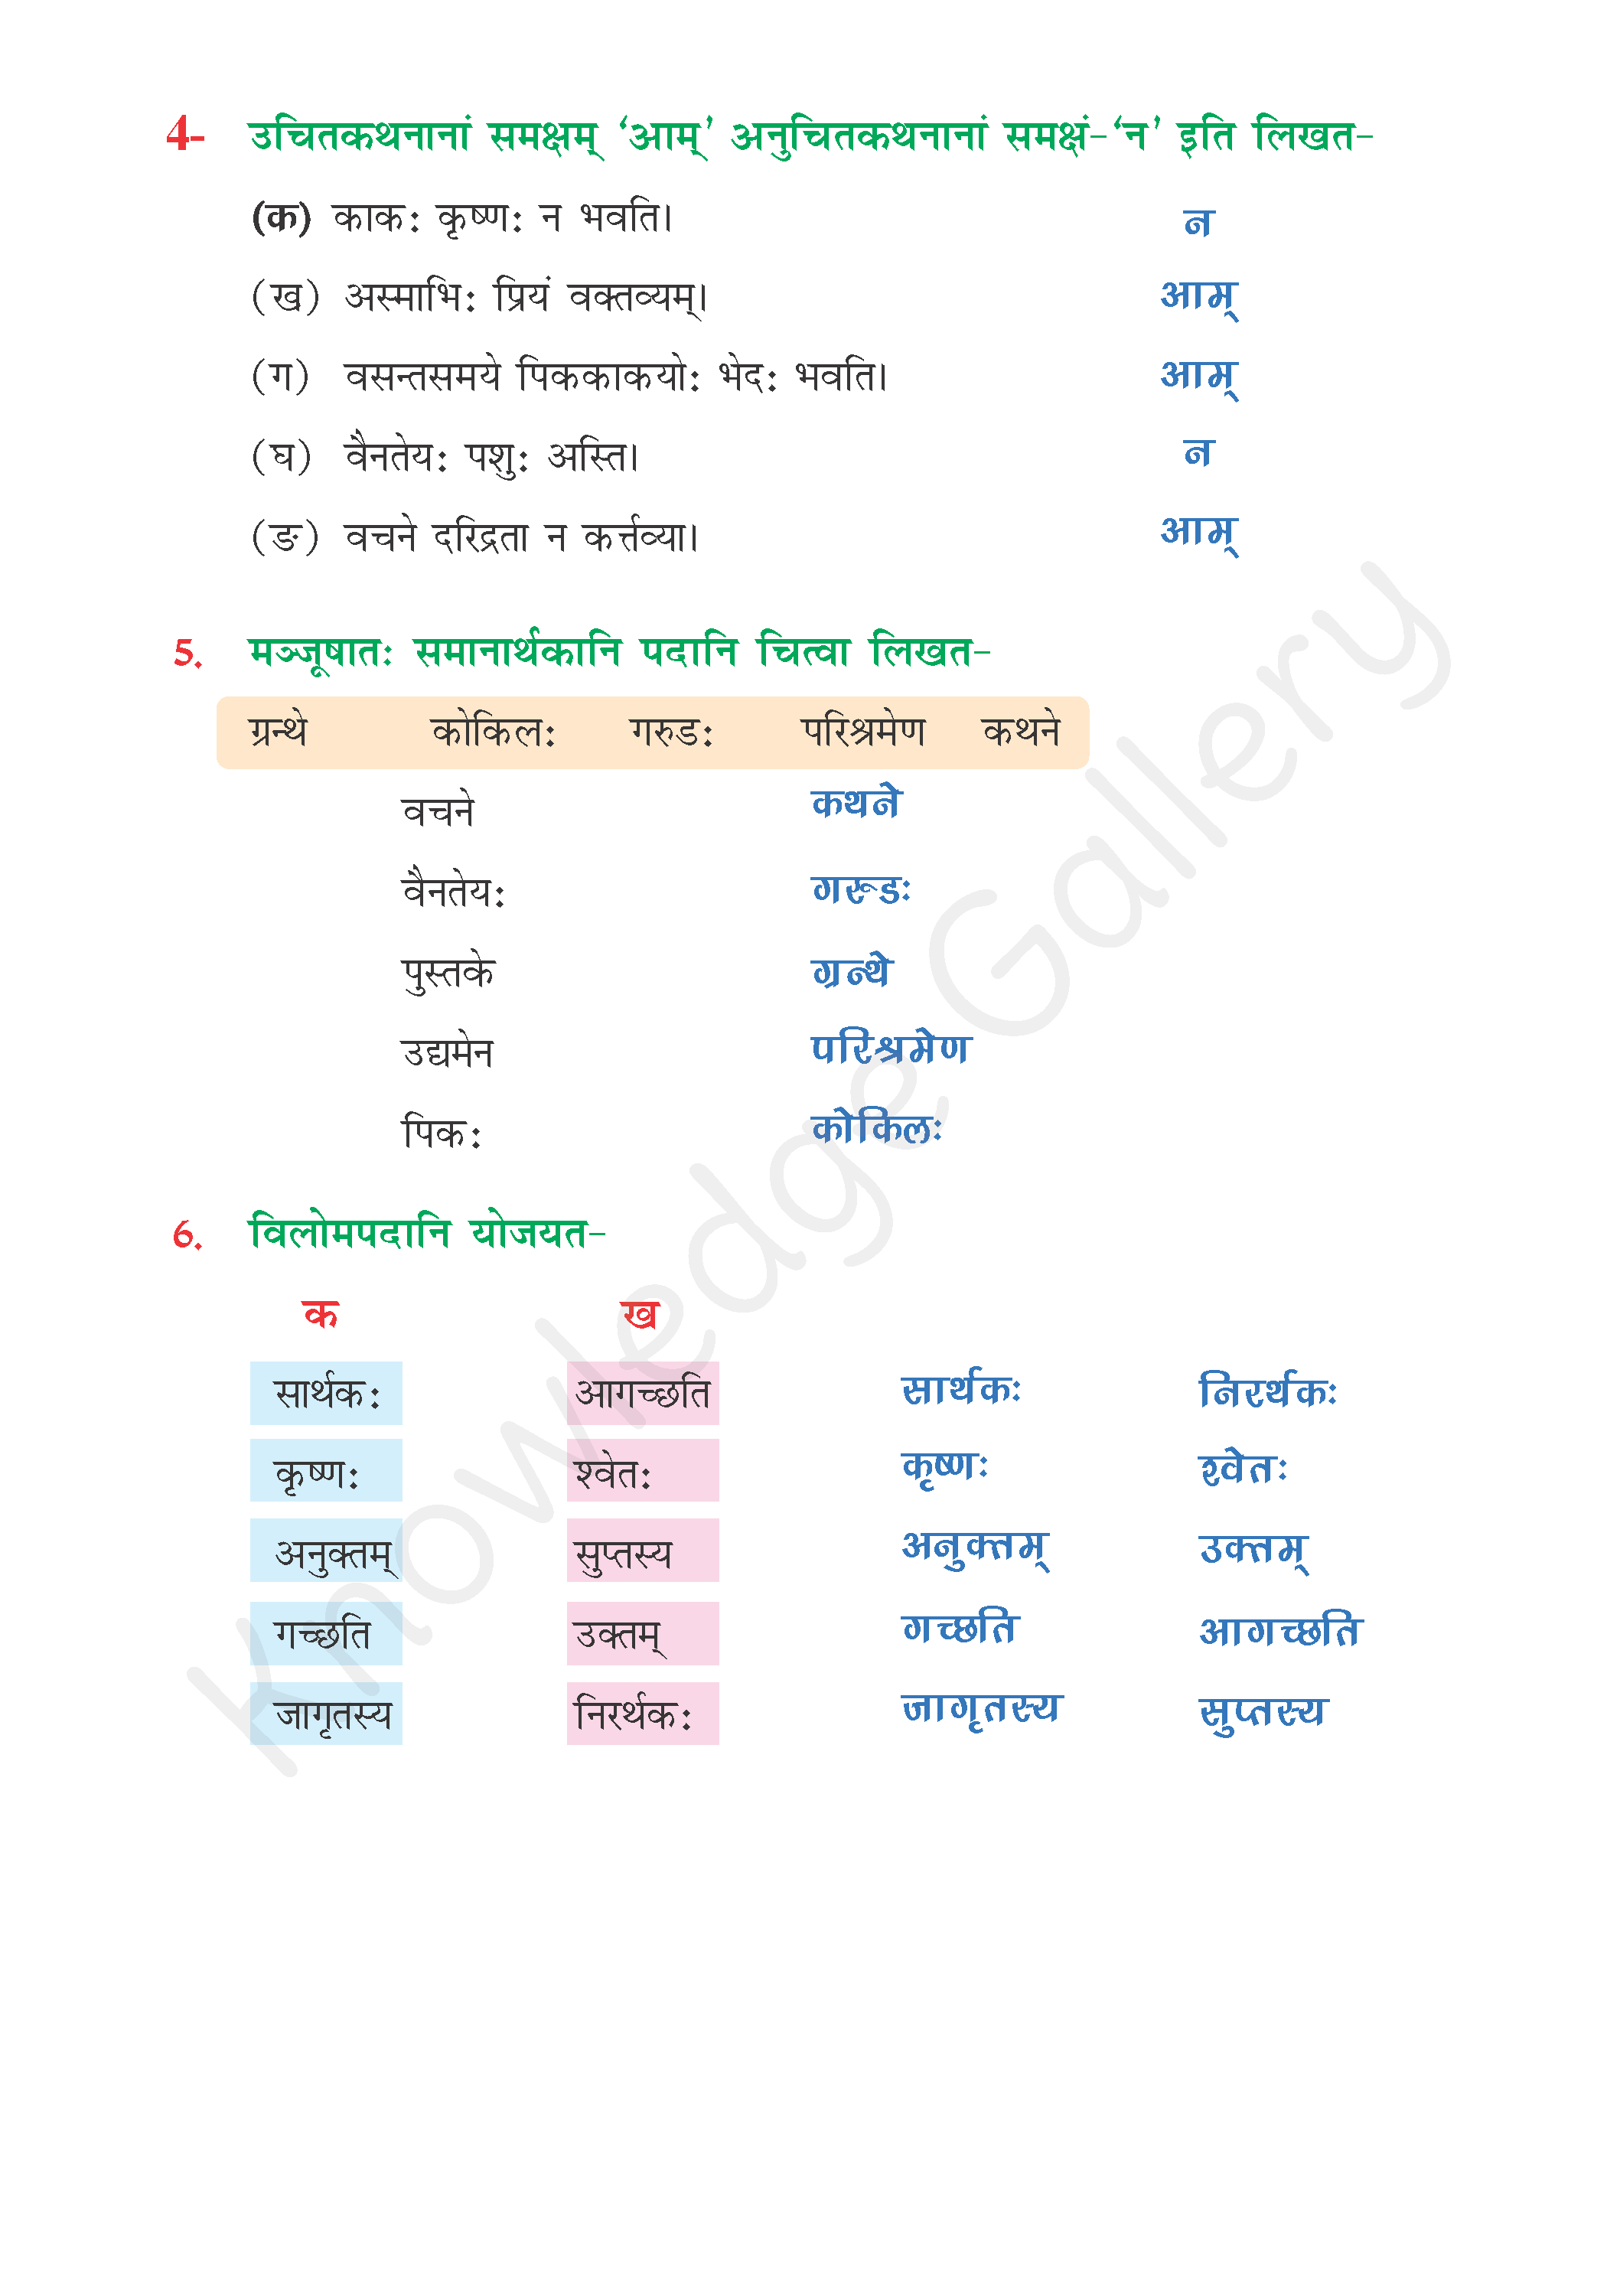 NCERT Solution For Class 6 Sanskrit Chapter 8 part 5